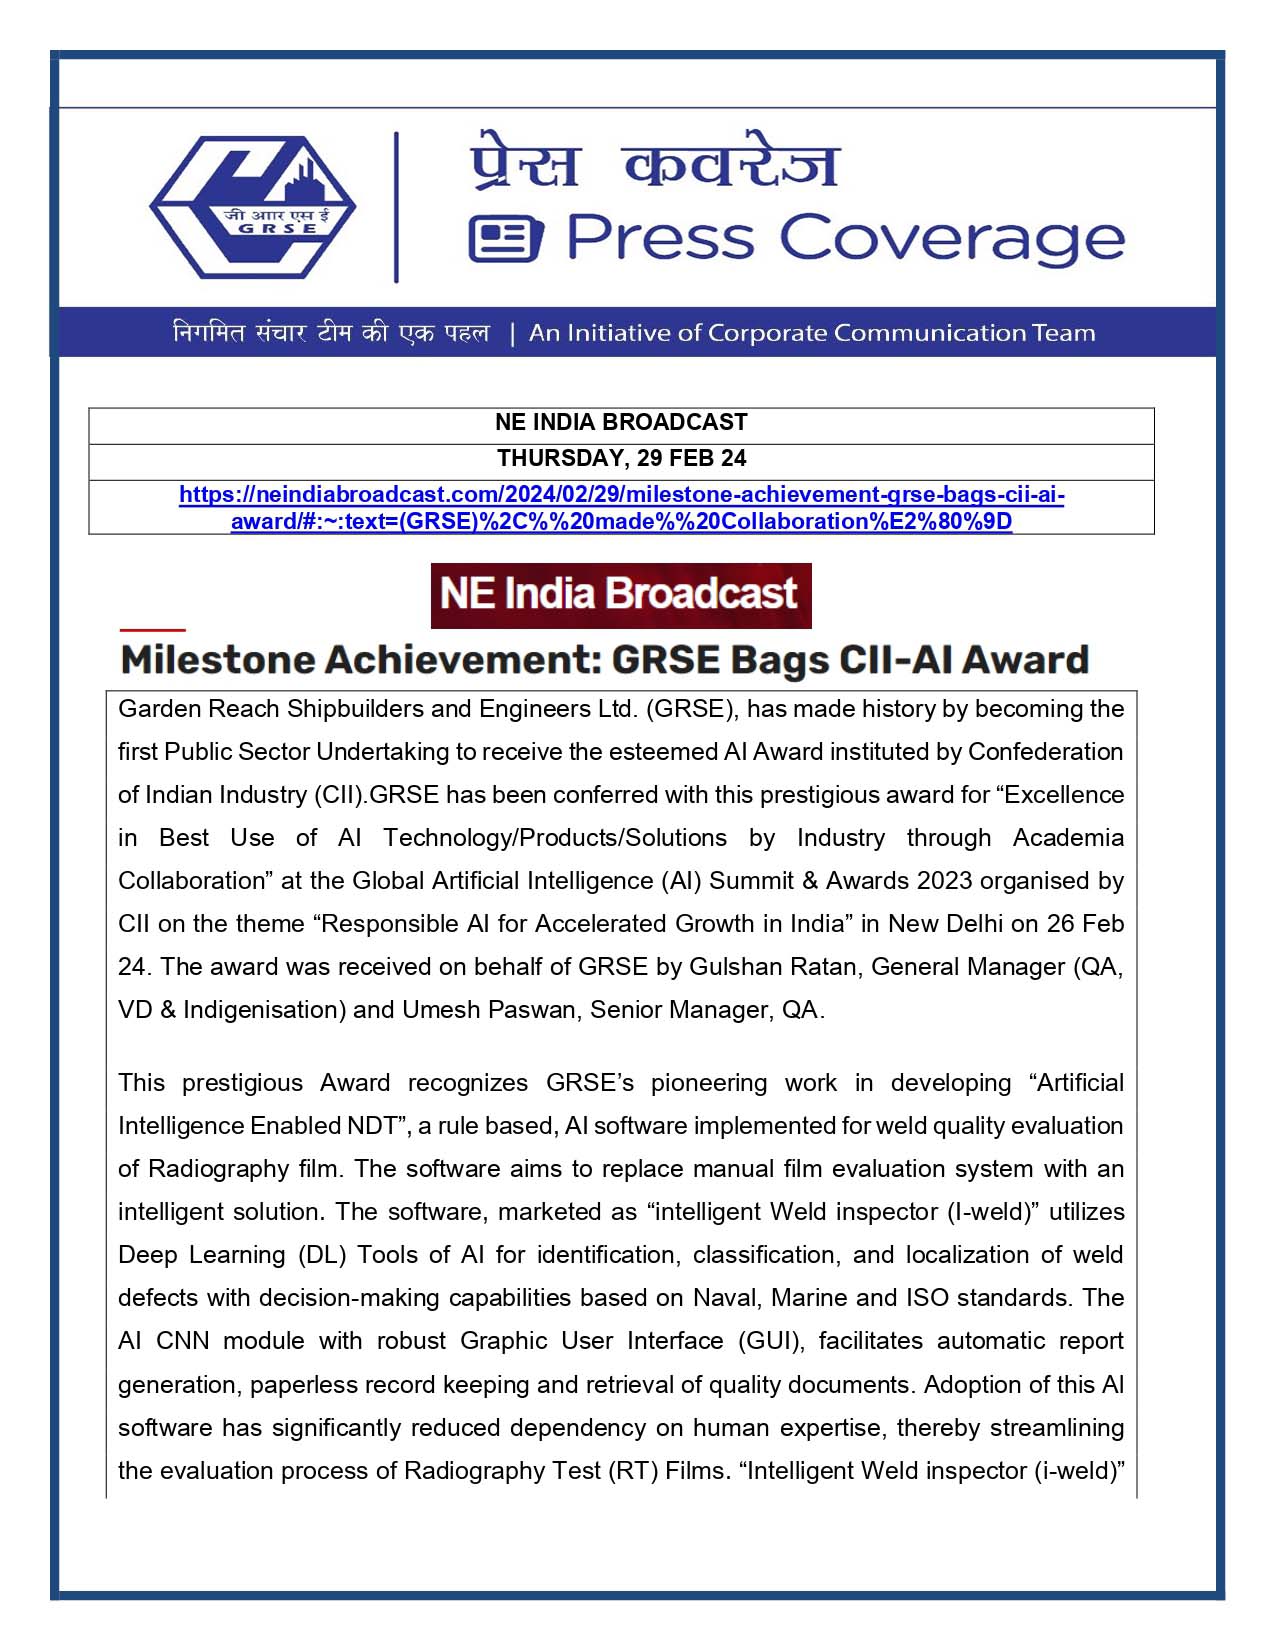 Press Coverage : NE India Broadcast, 29 Feb 24 : Milestone Achievement : GRSE Bags CII-AI Award